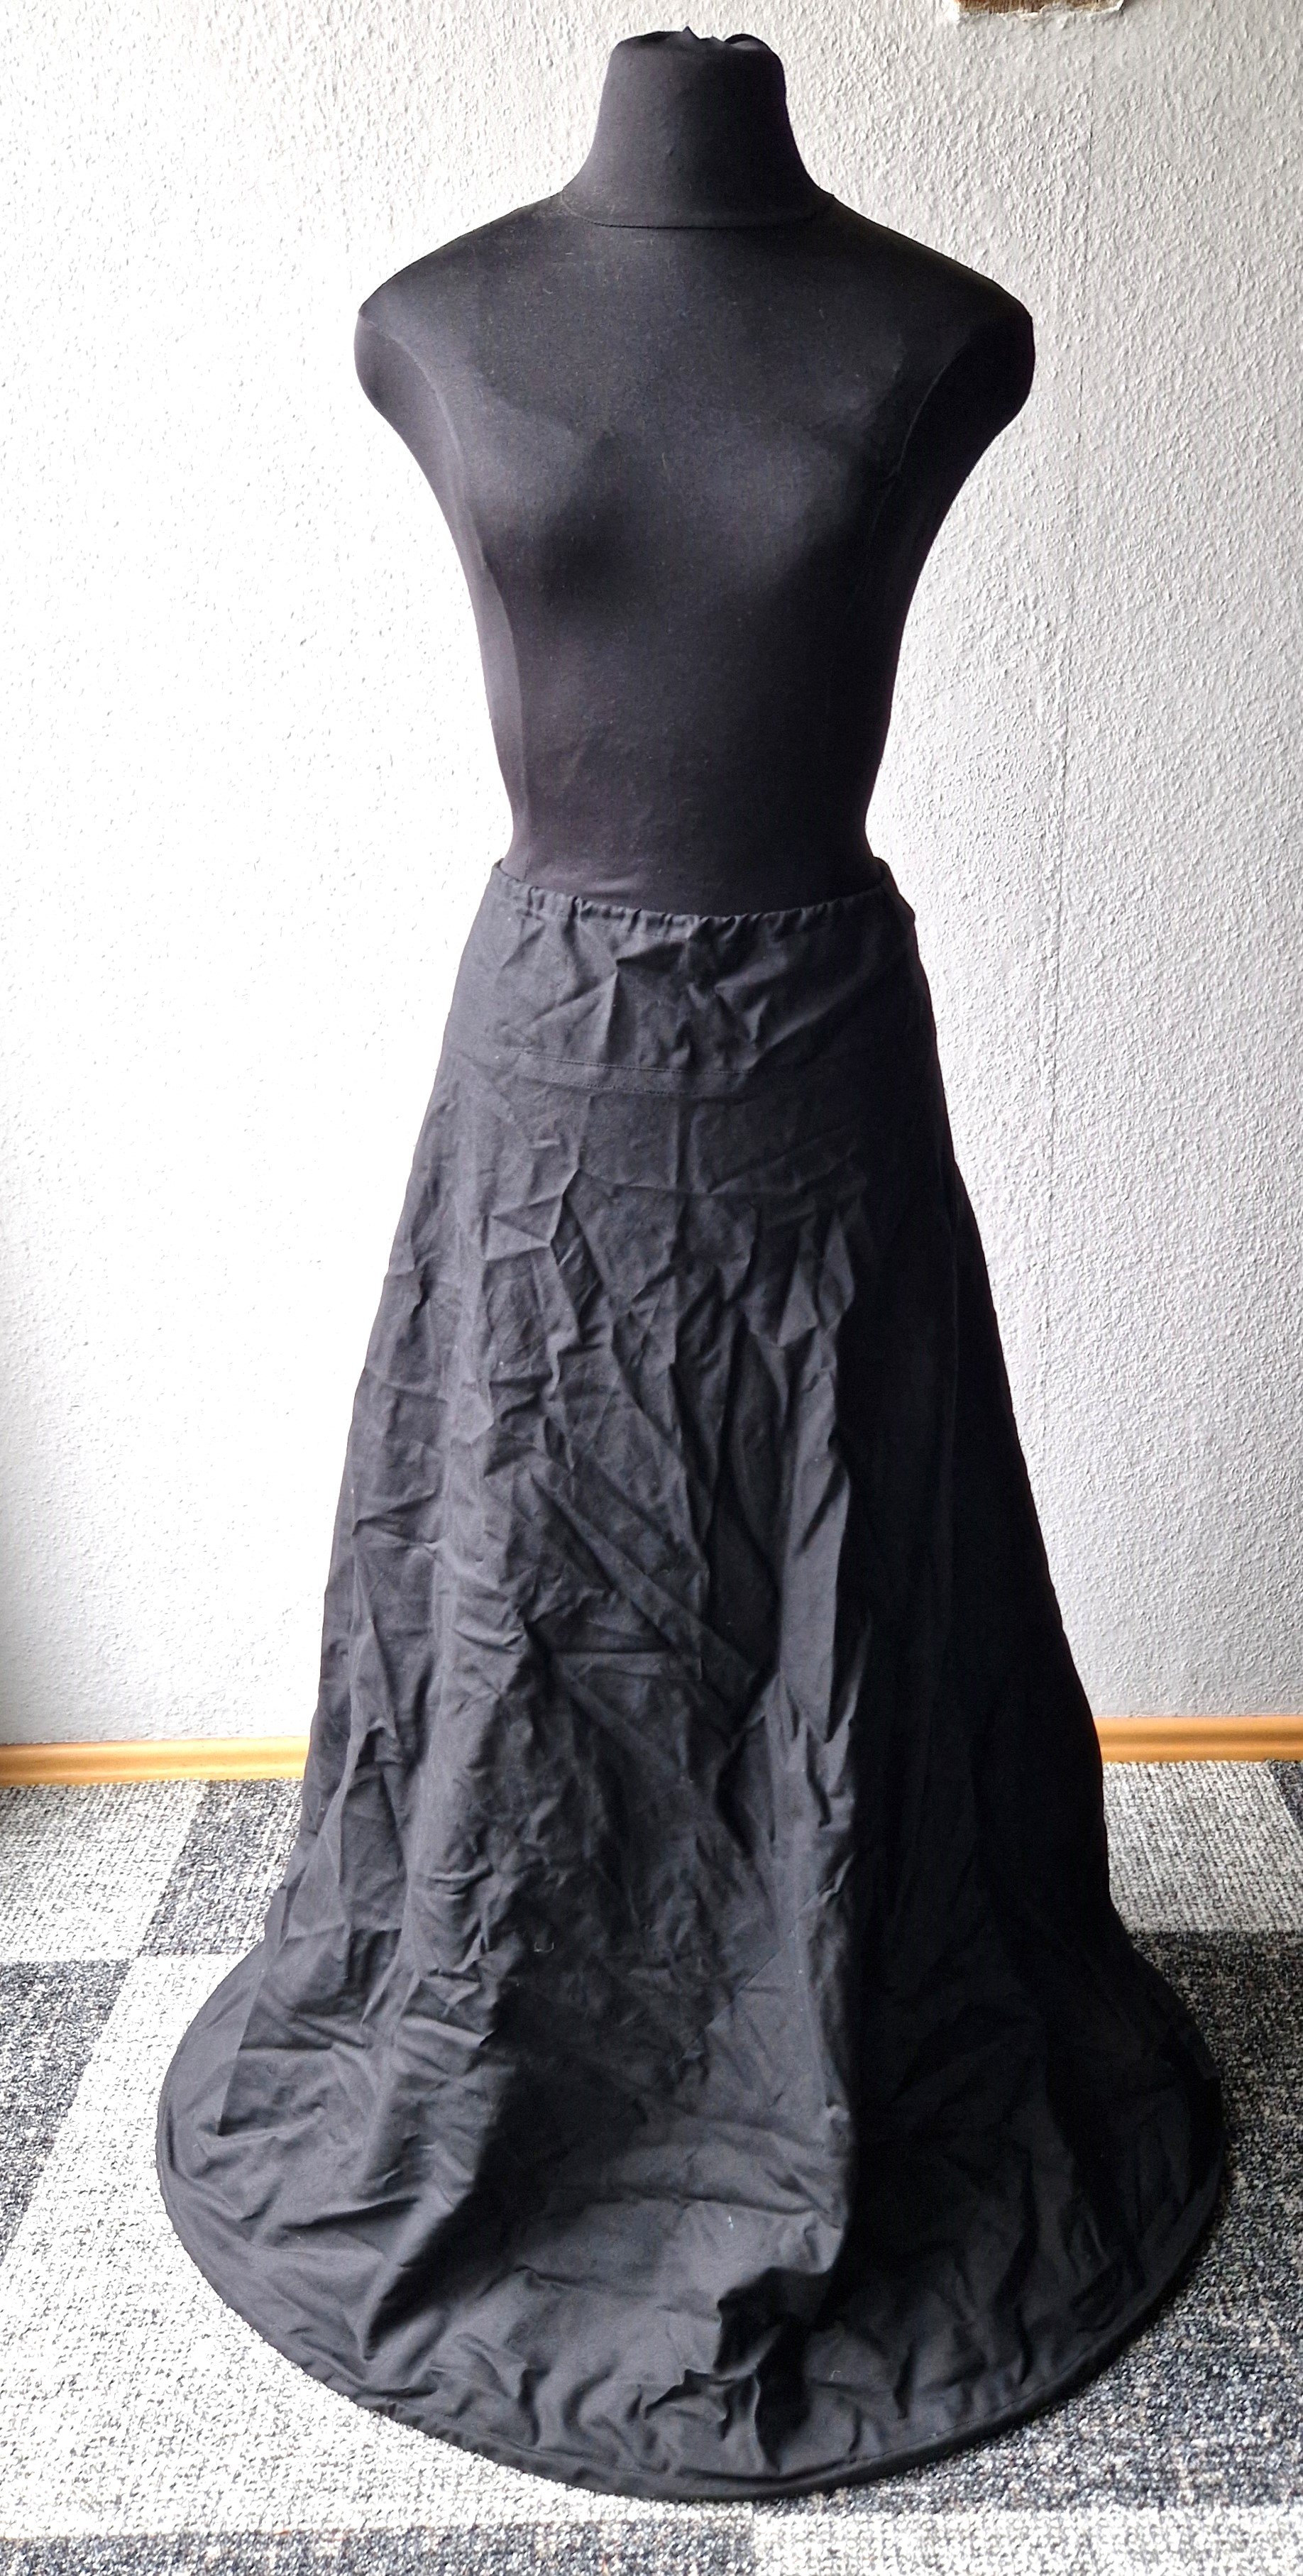 Unterrock aus schwarzer Baumwolle, Anfang 21. Jh. (Schloß Wernigerode GmbH RR-R)